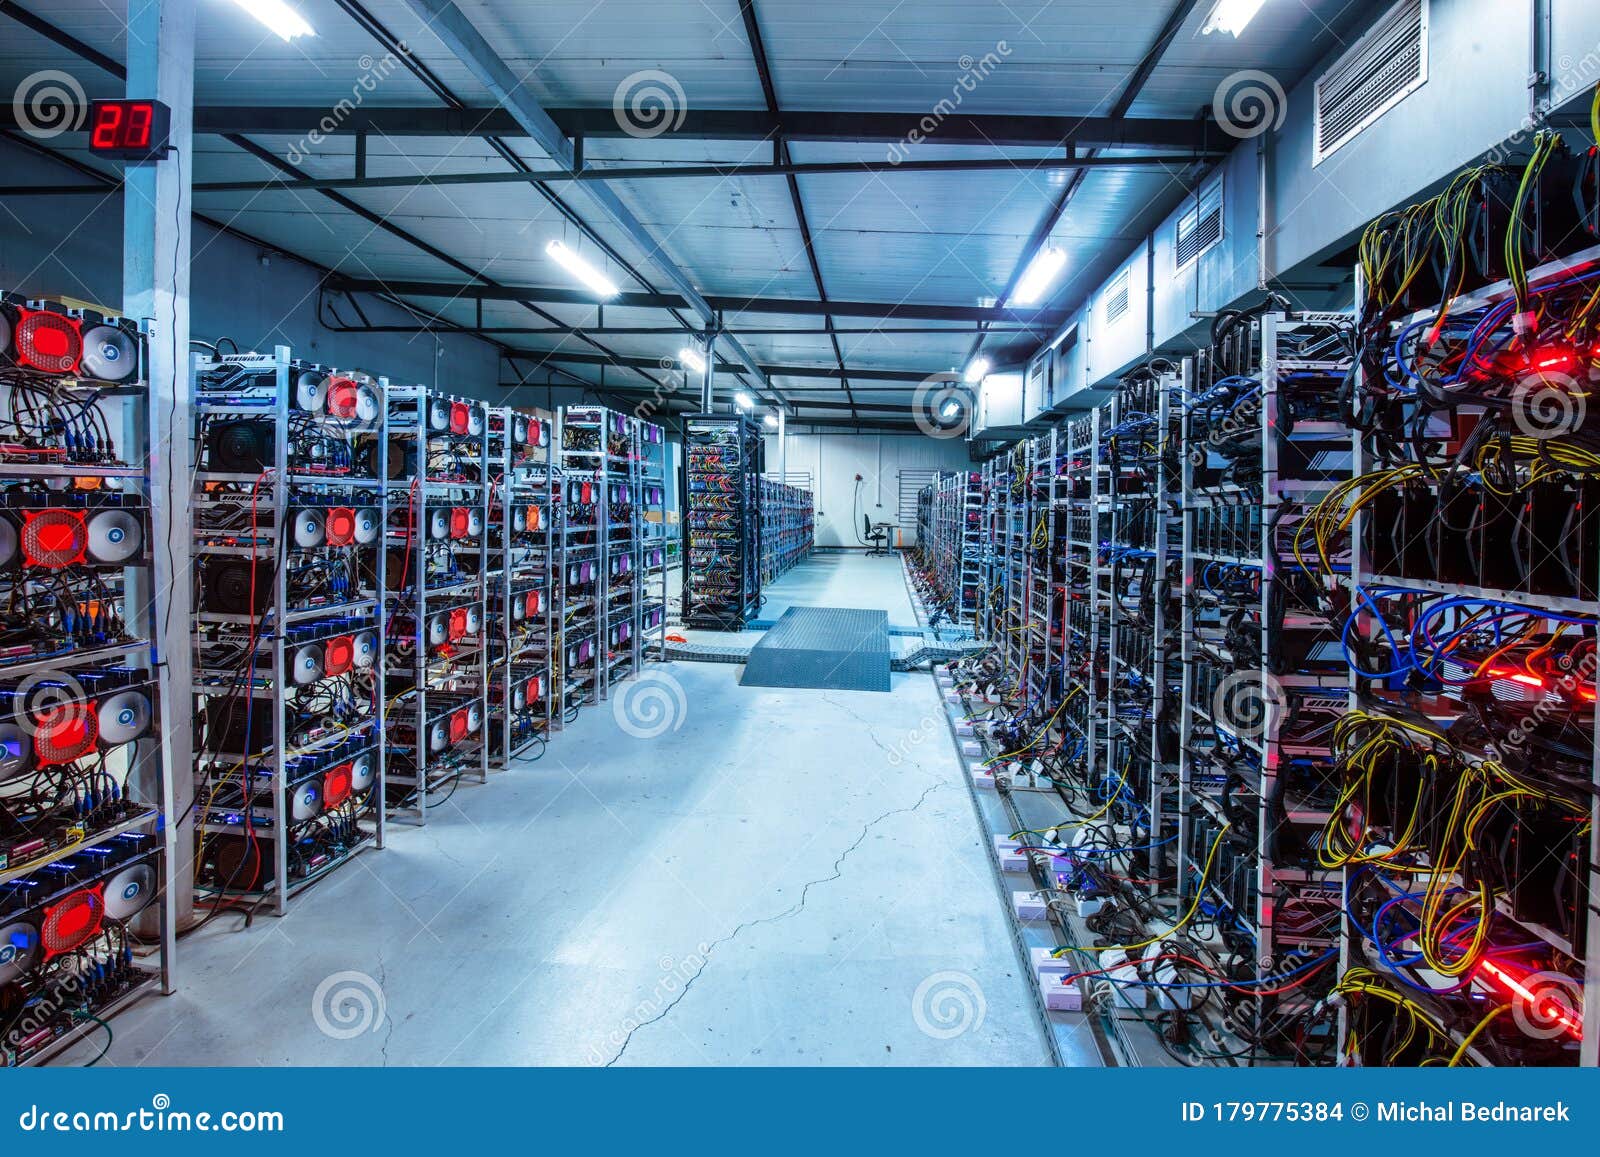 Bitcoin And Crypto Mining Farm. Big Data Center Stock ...